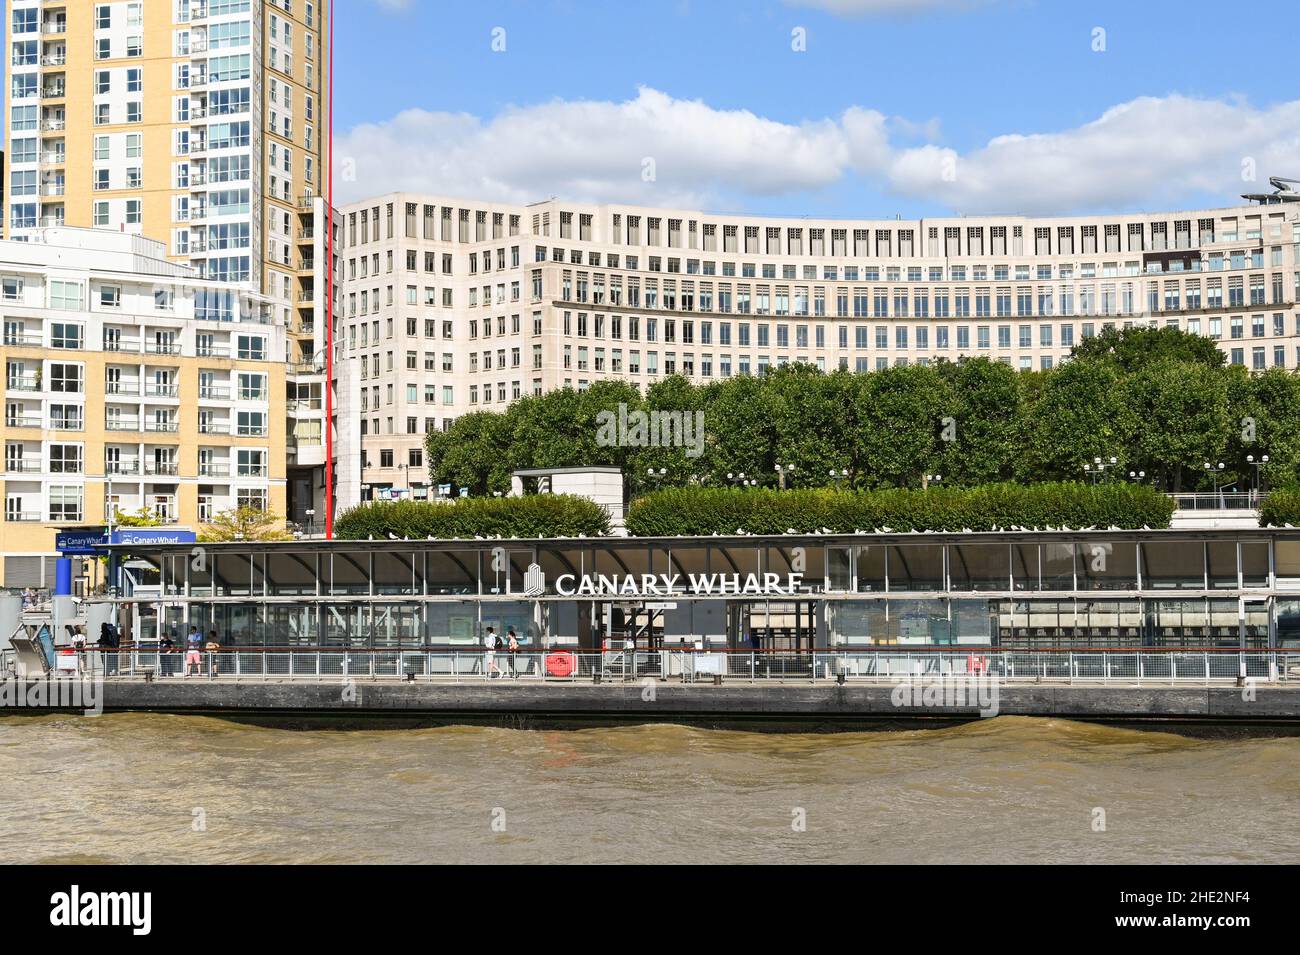 Londra, Inghilterra - Giugno 2021: Persone in attesa di un traghetto passeggeri sul molo di Canary Wharf nel centro di Londra. Foto Stock